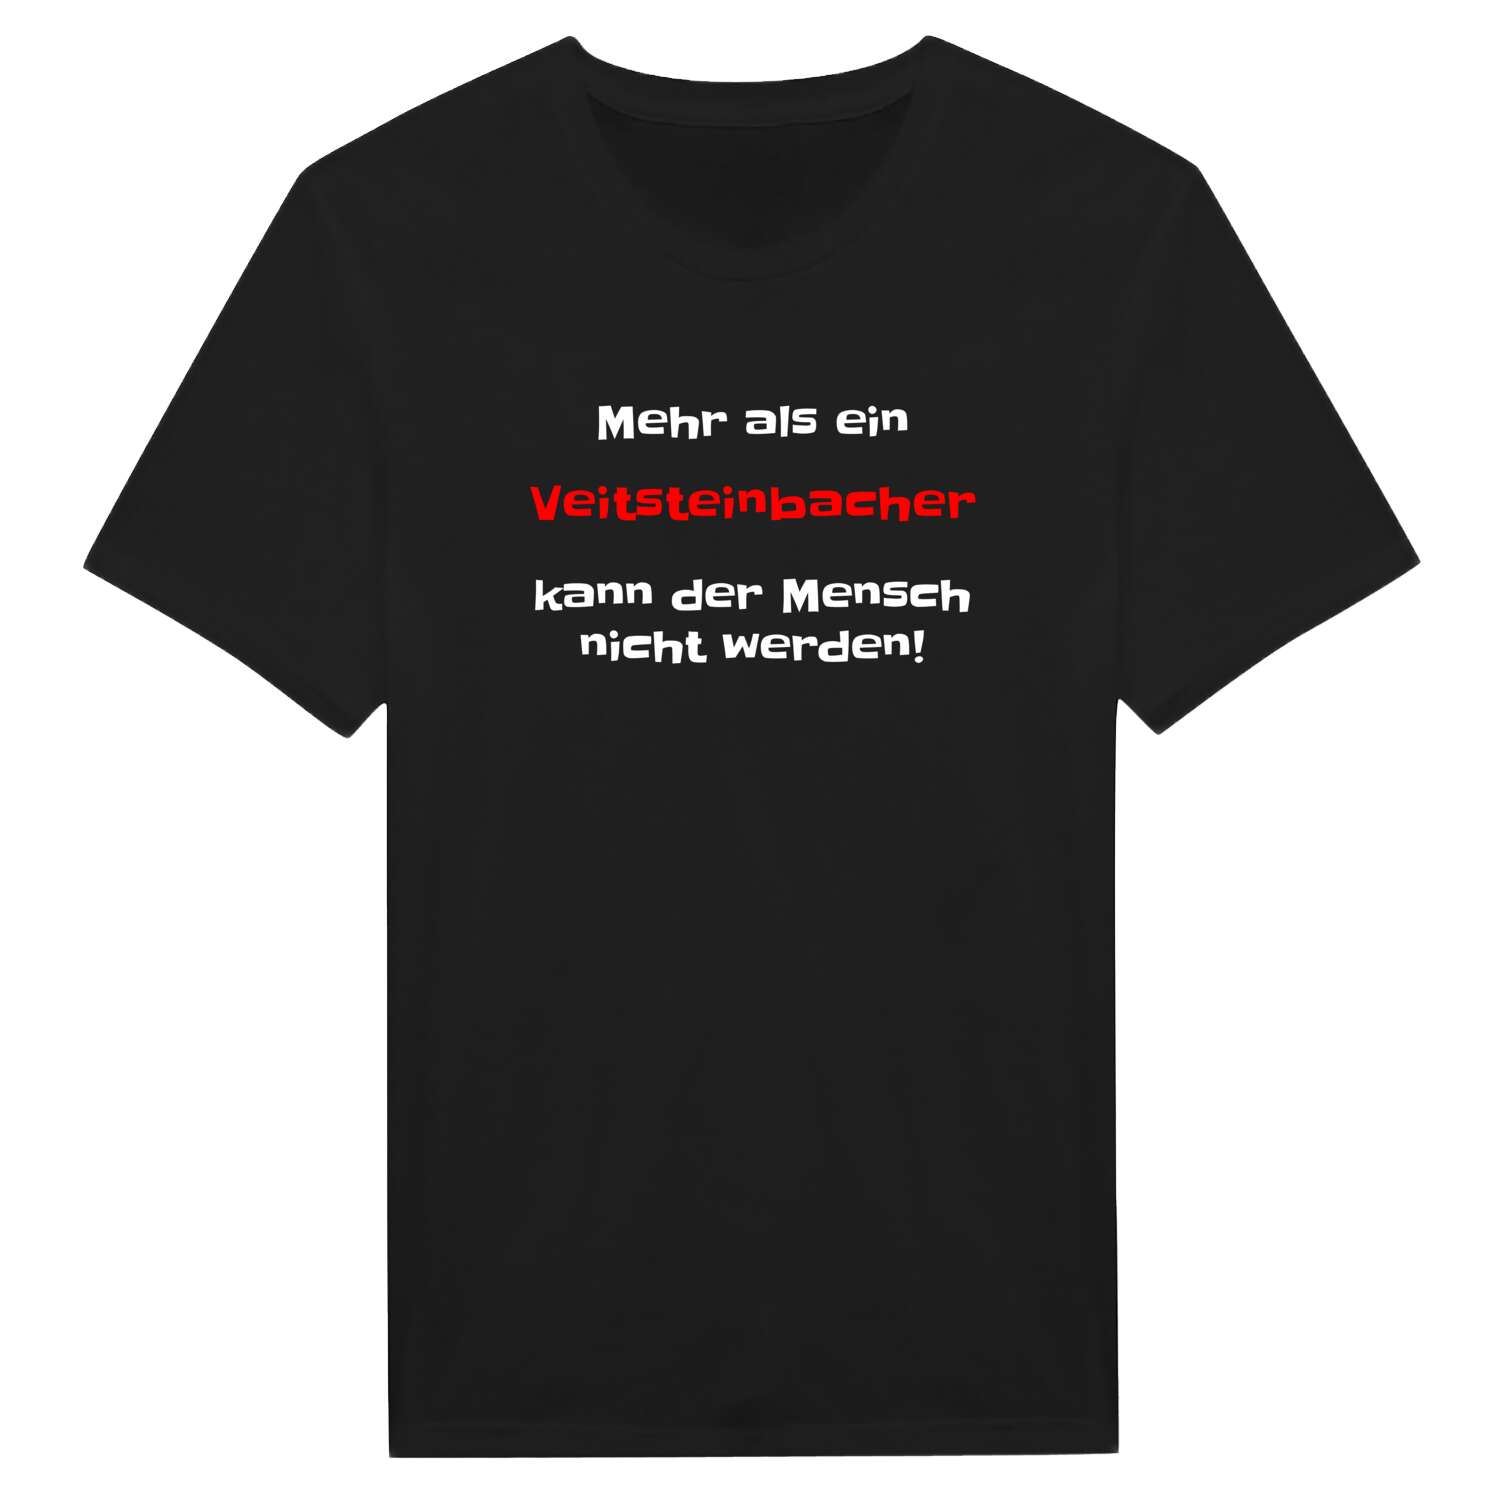 Veitsteinbach T-Shirt »Mehr als ein«